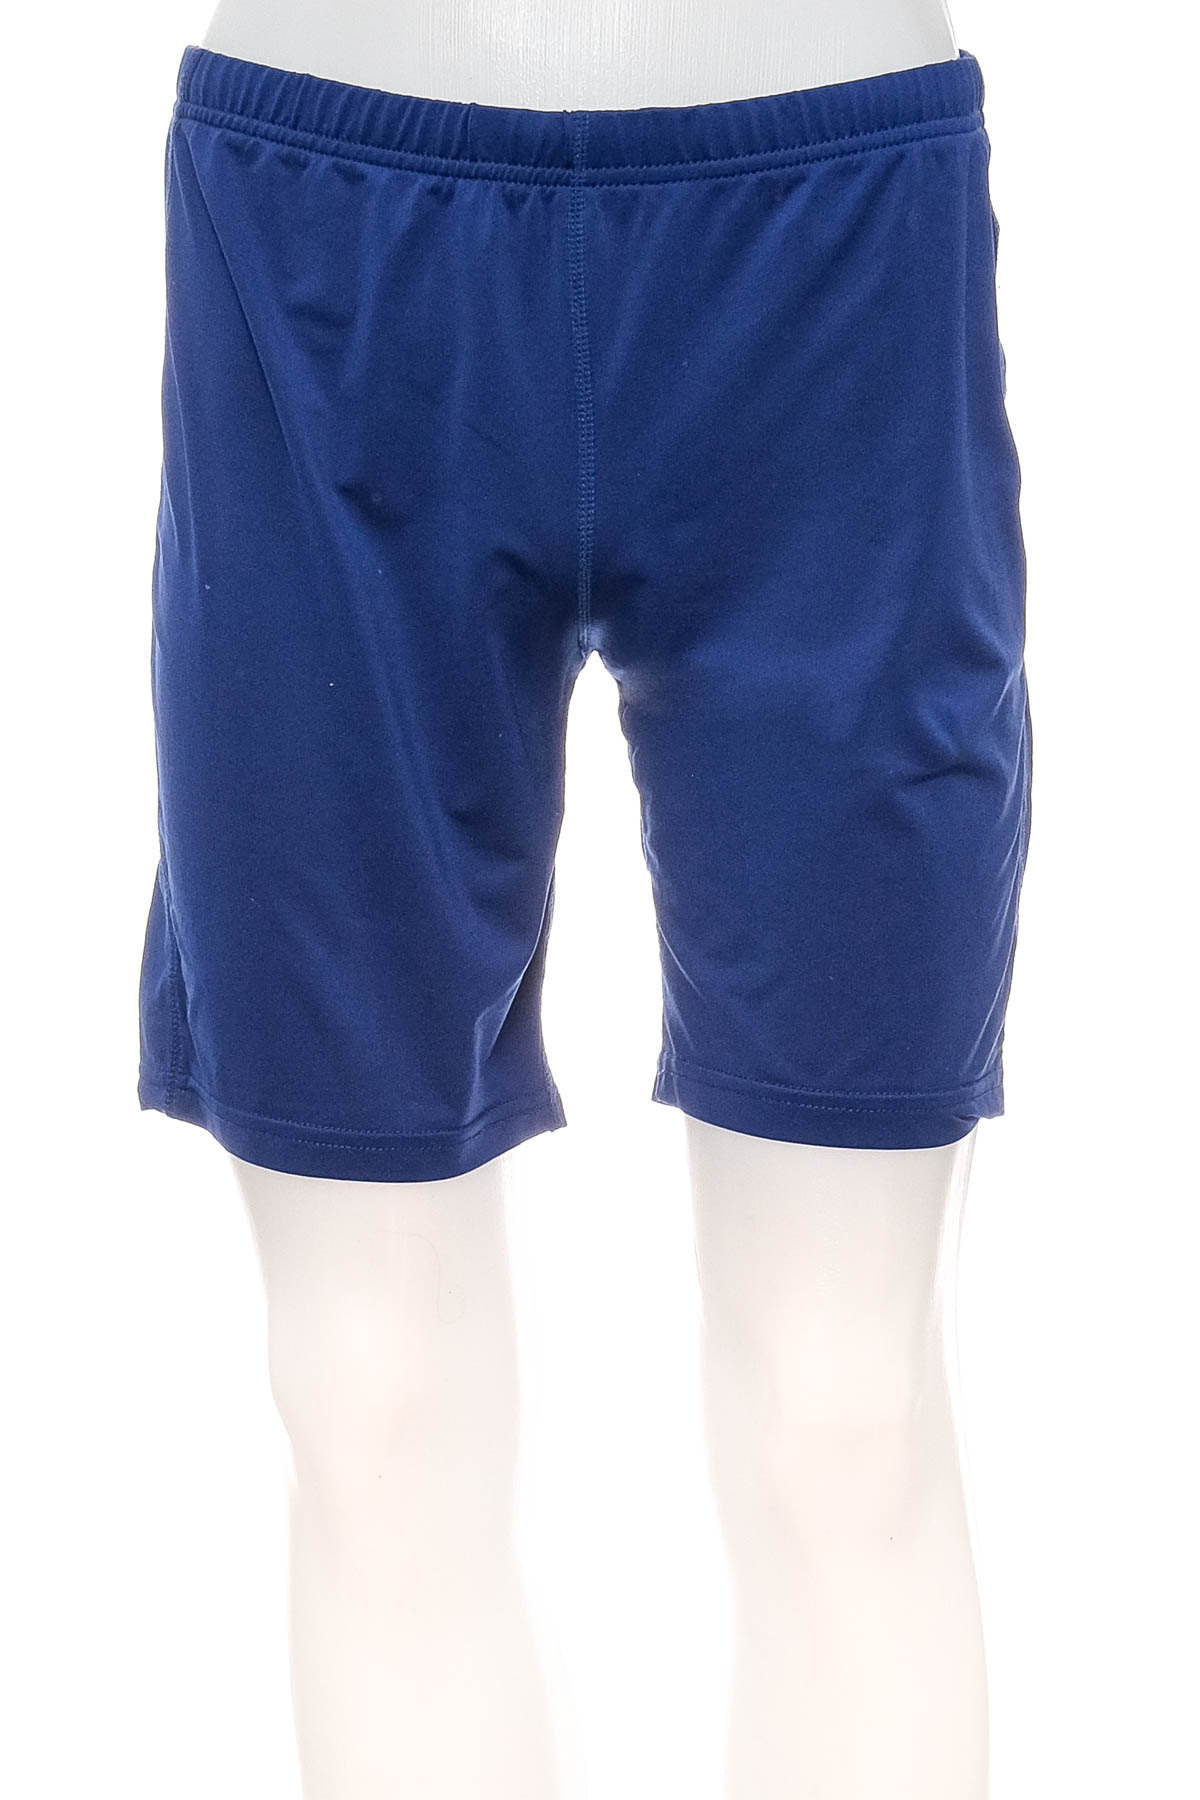 Female shorts - Shamp - 0